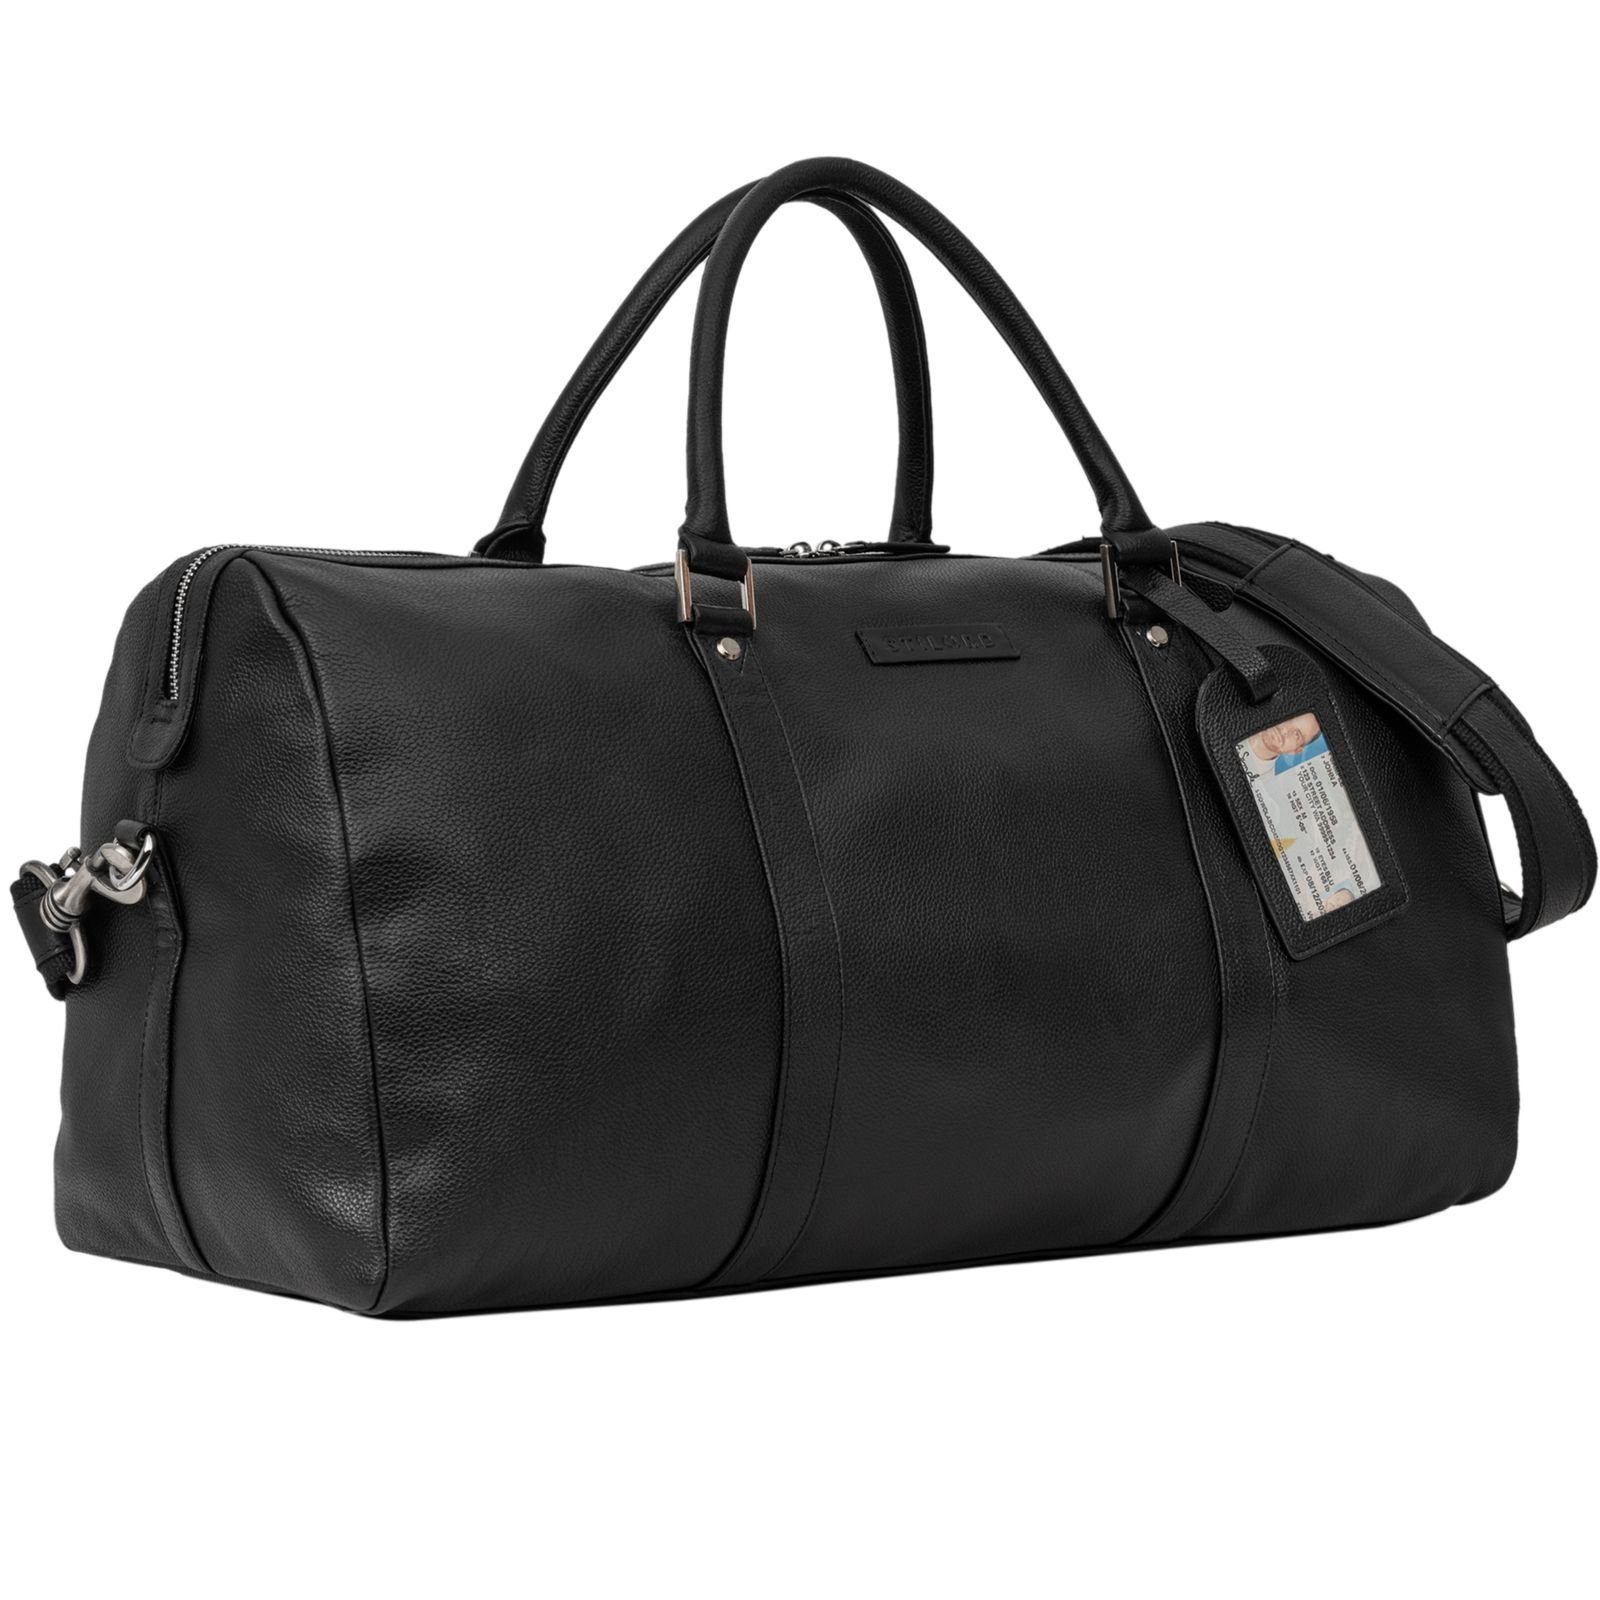 STILORD Reisetasche "Herkules" hochwertige Reisetasche Groß aus echtem Leder Weekender schwarz